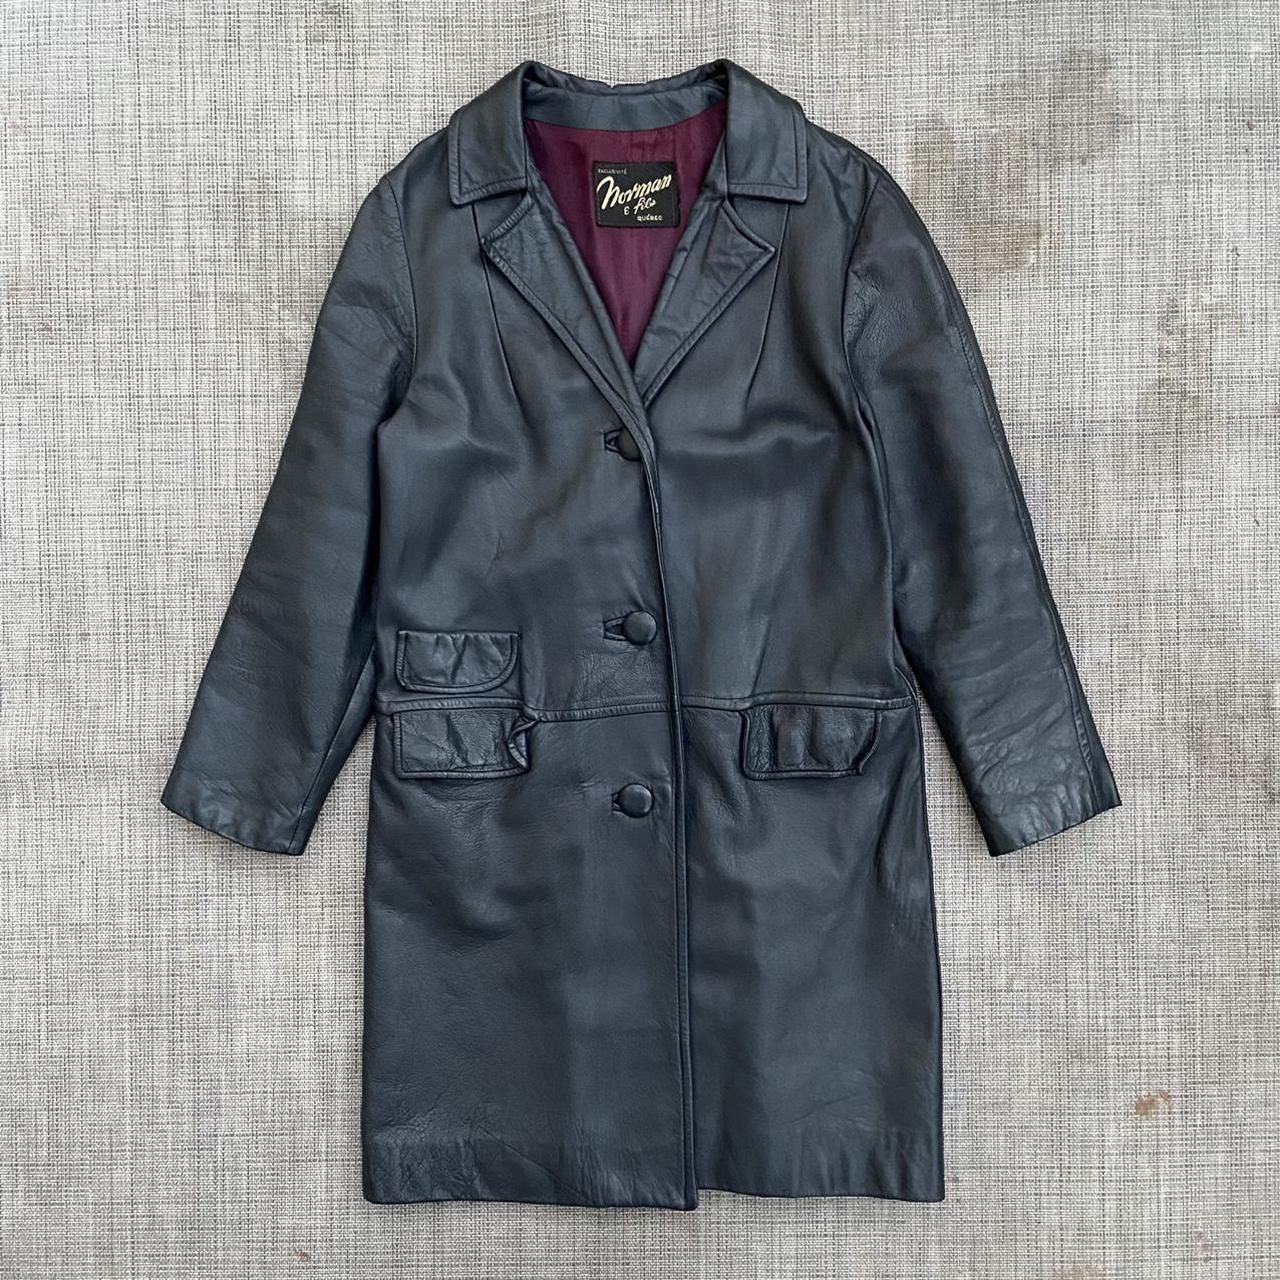 Vintage grey leather jacket Brand: Norman & fils... - Depop